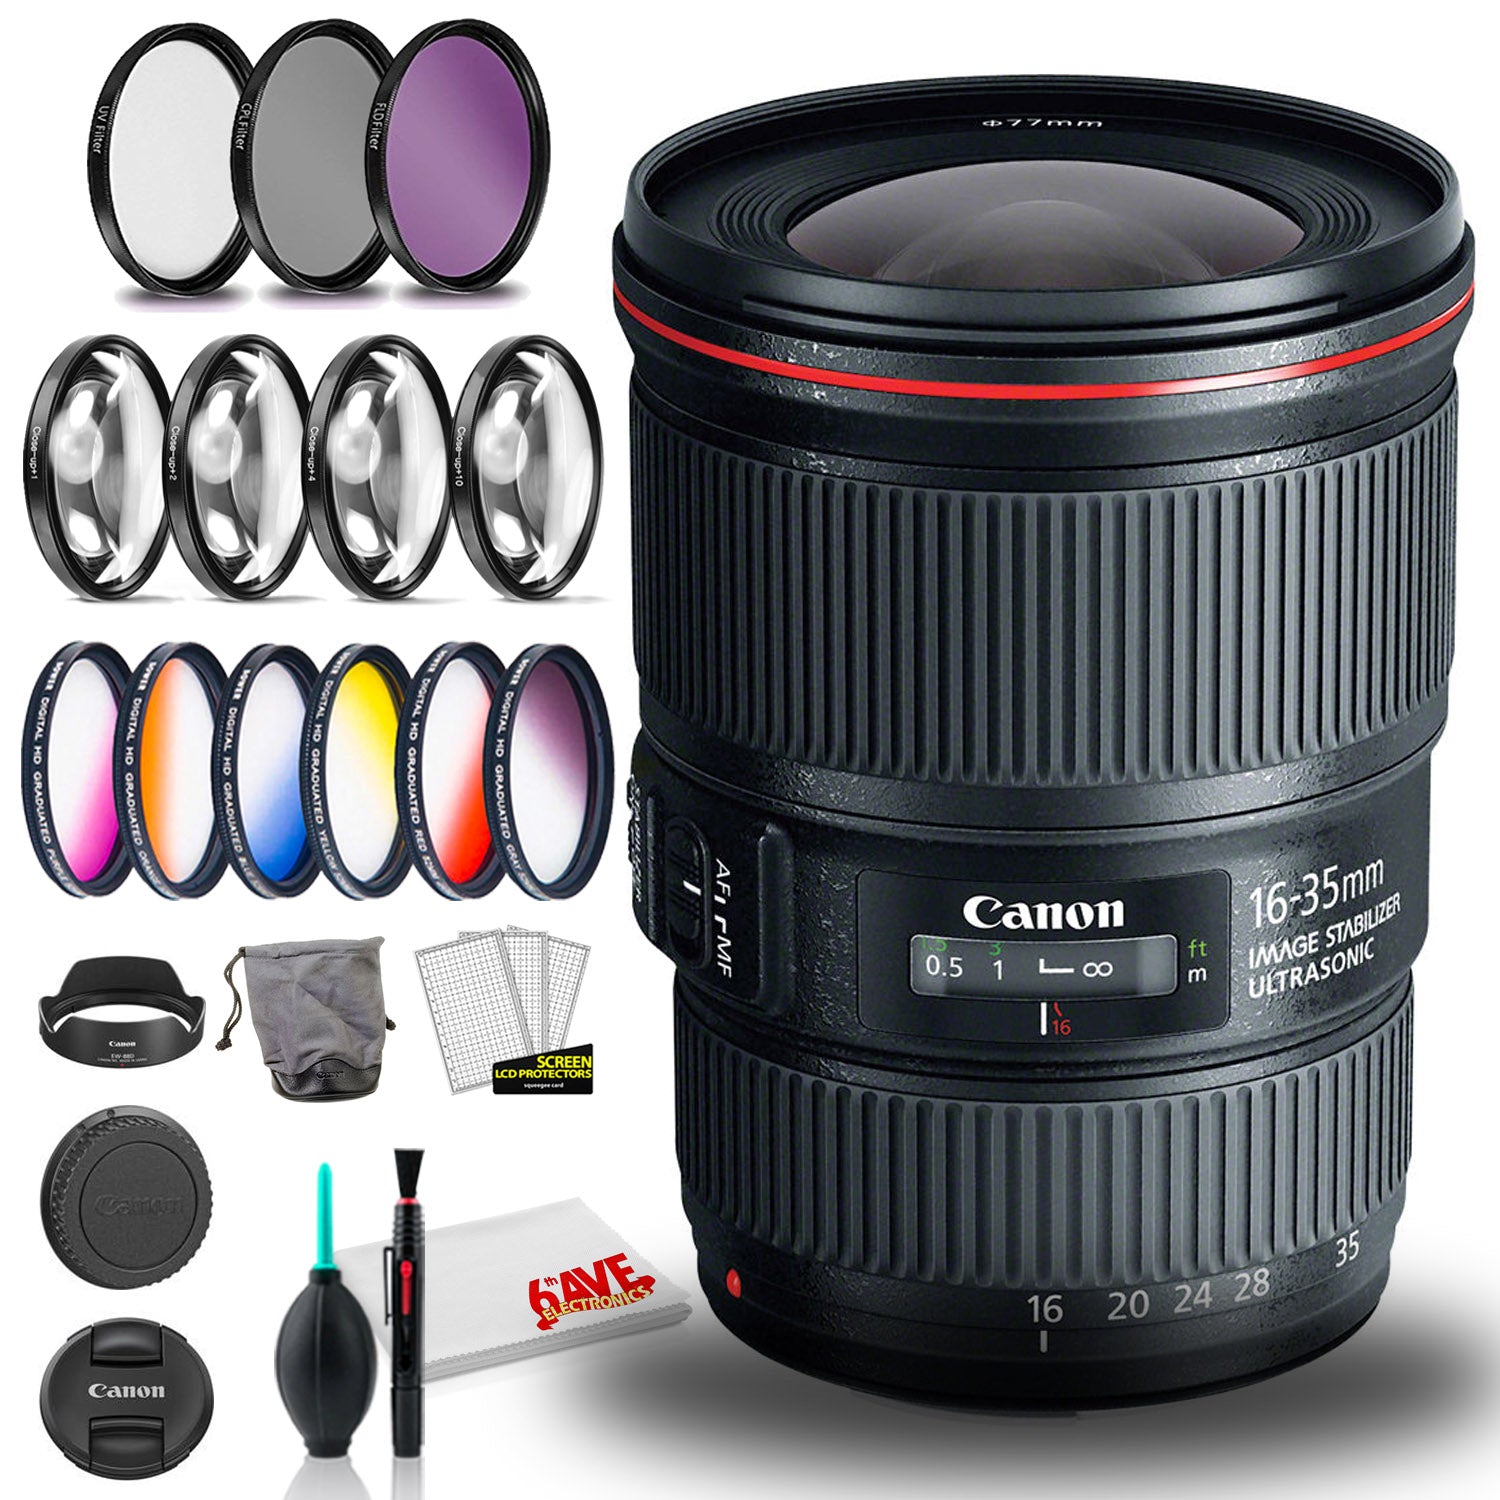 Canon EF 16-35mm f/4L IS USM Lens (International Model) with Filter Set Bundle